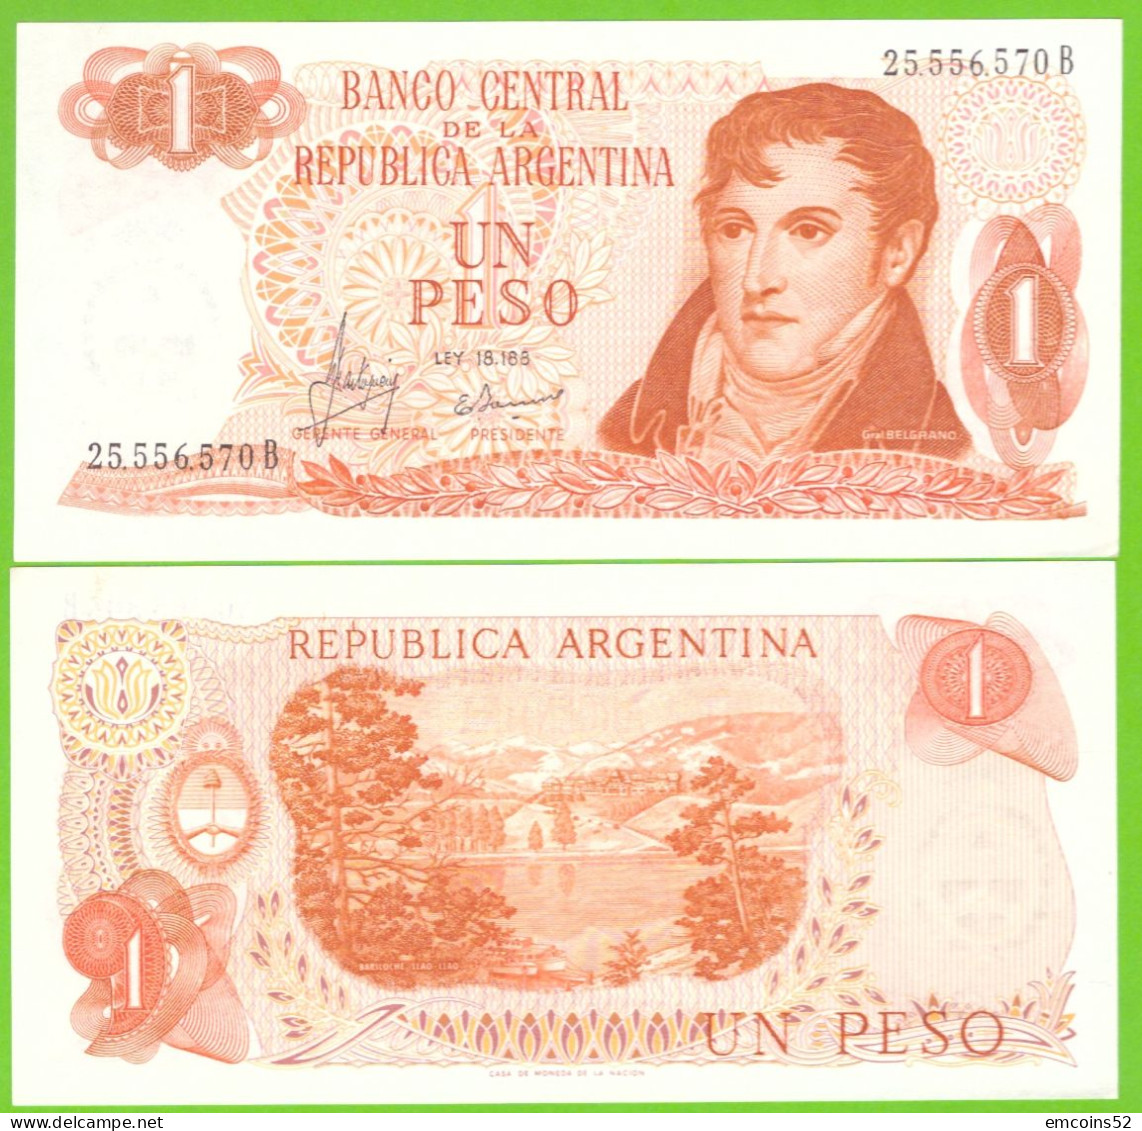 ARGENTINA 1 PESO 1970/1973 P-287(1)  UNC - Argentina